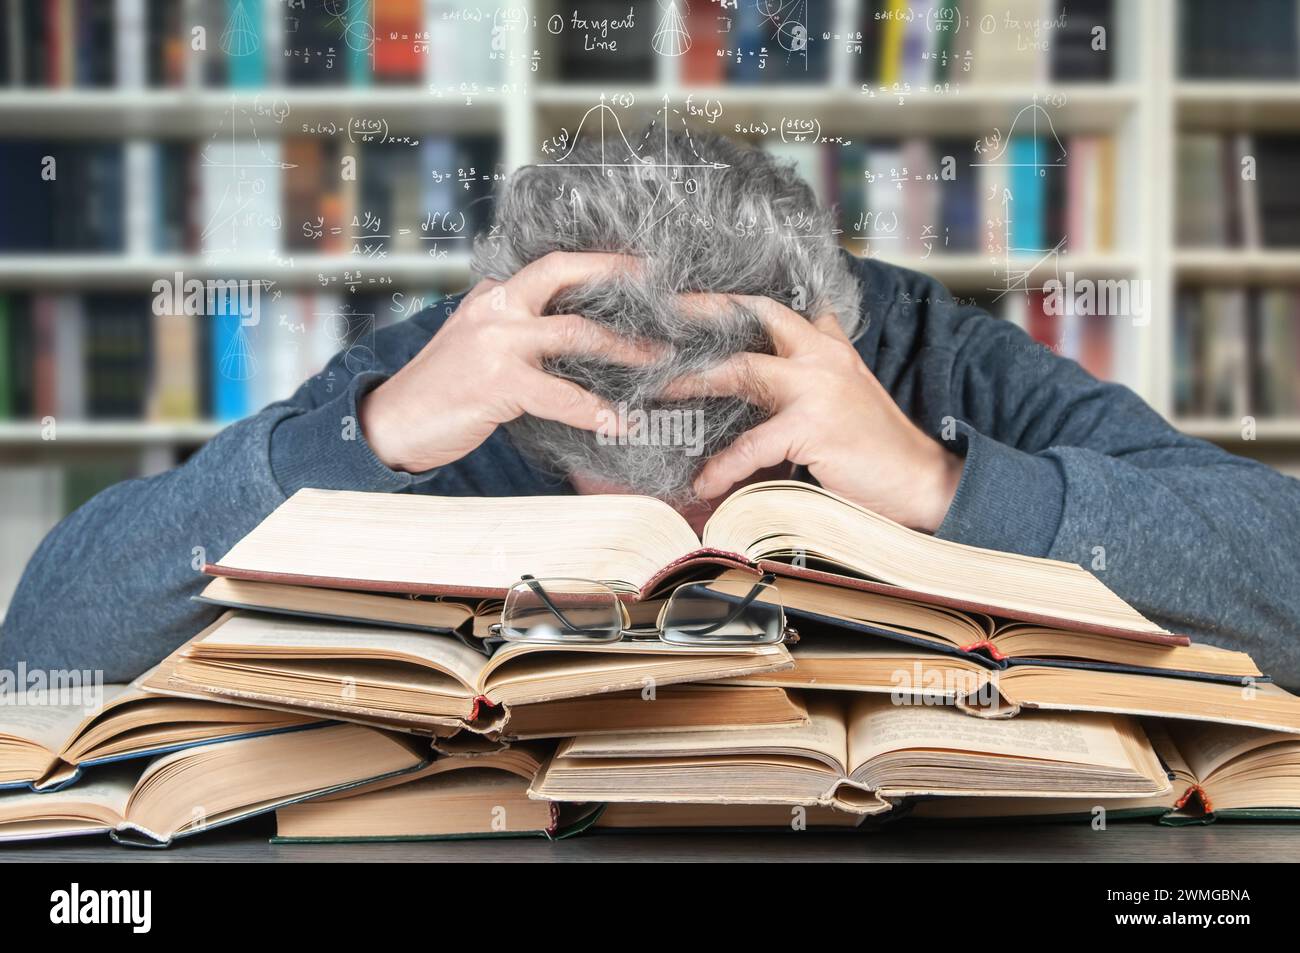 Un adulto cansado de duro estudio yace sobre muchos libros y sueños de fórmulas matemáticas. El concepto de dificultad de aprendizaje en la vejez. Foto de stock